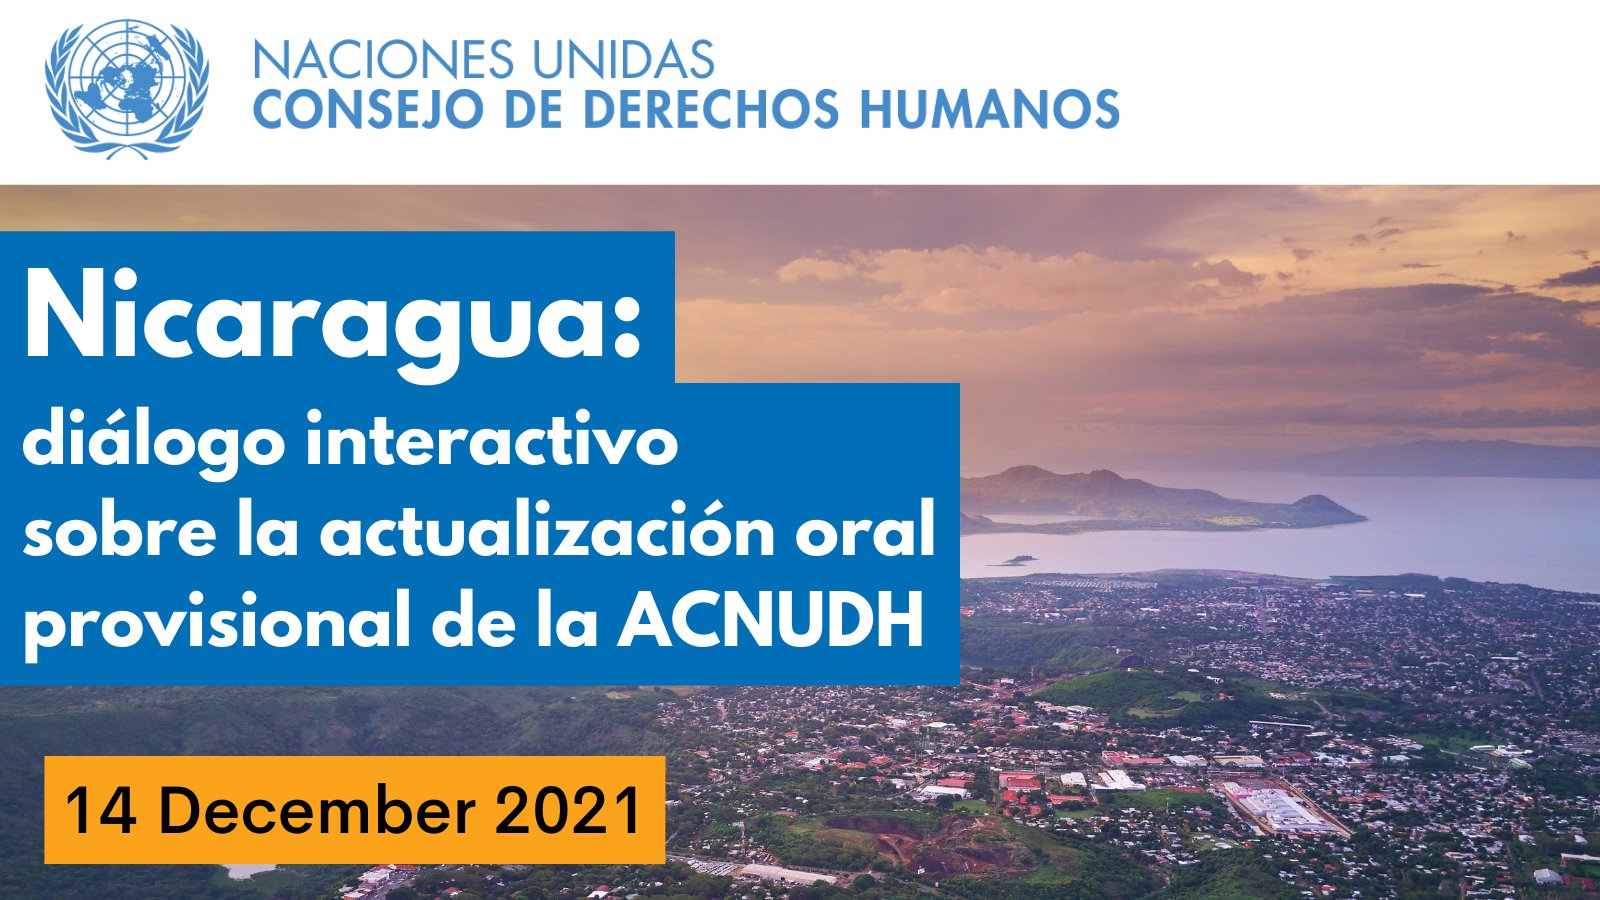 Diálogo interactivo sobra la actualización oral provisional de la Alta Comisionada sobre la situación en Nicaragua ante el Consejo de Derechos Humanos.